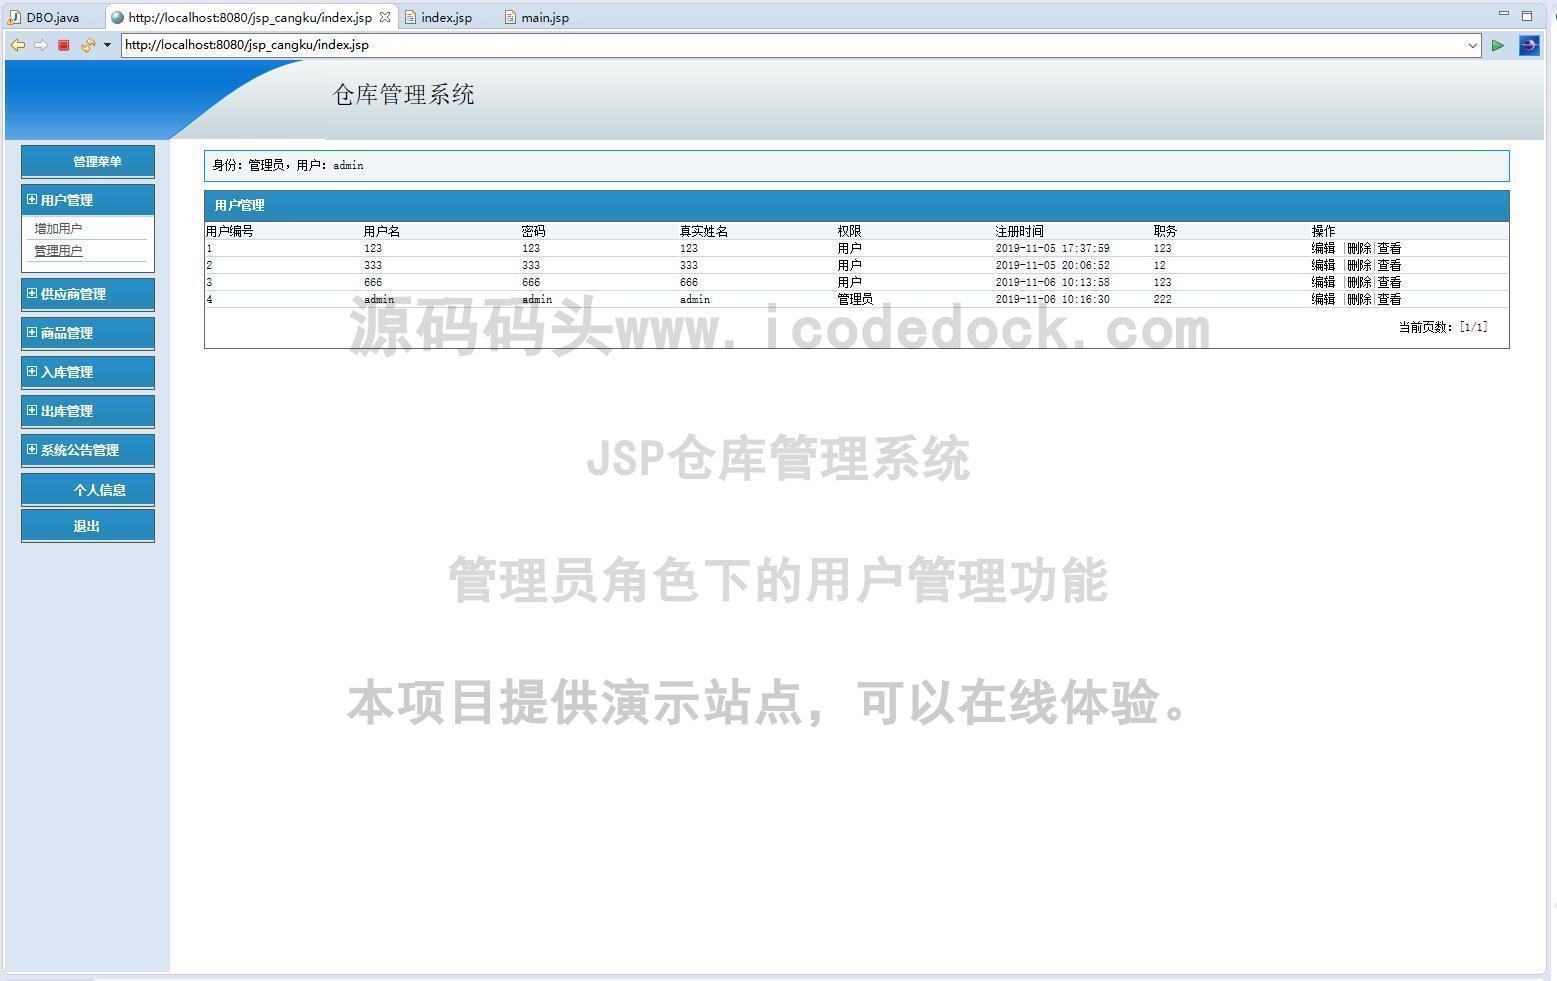 源码码头-JSP仓库管理系统-管理员角色-用户管理